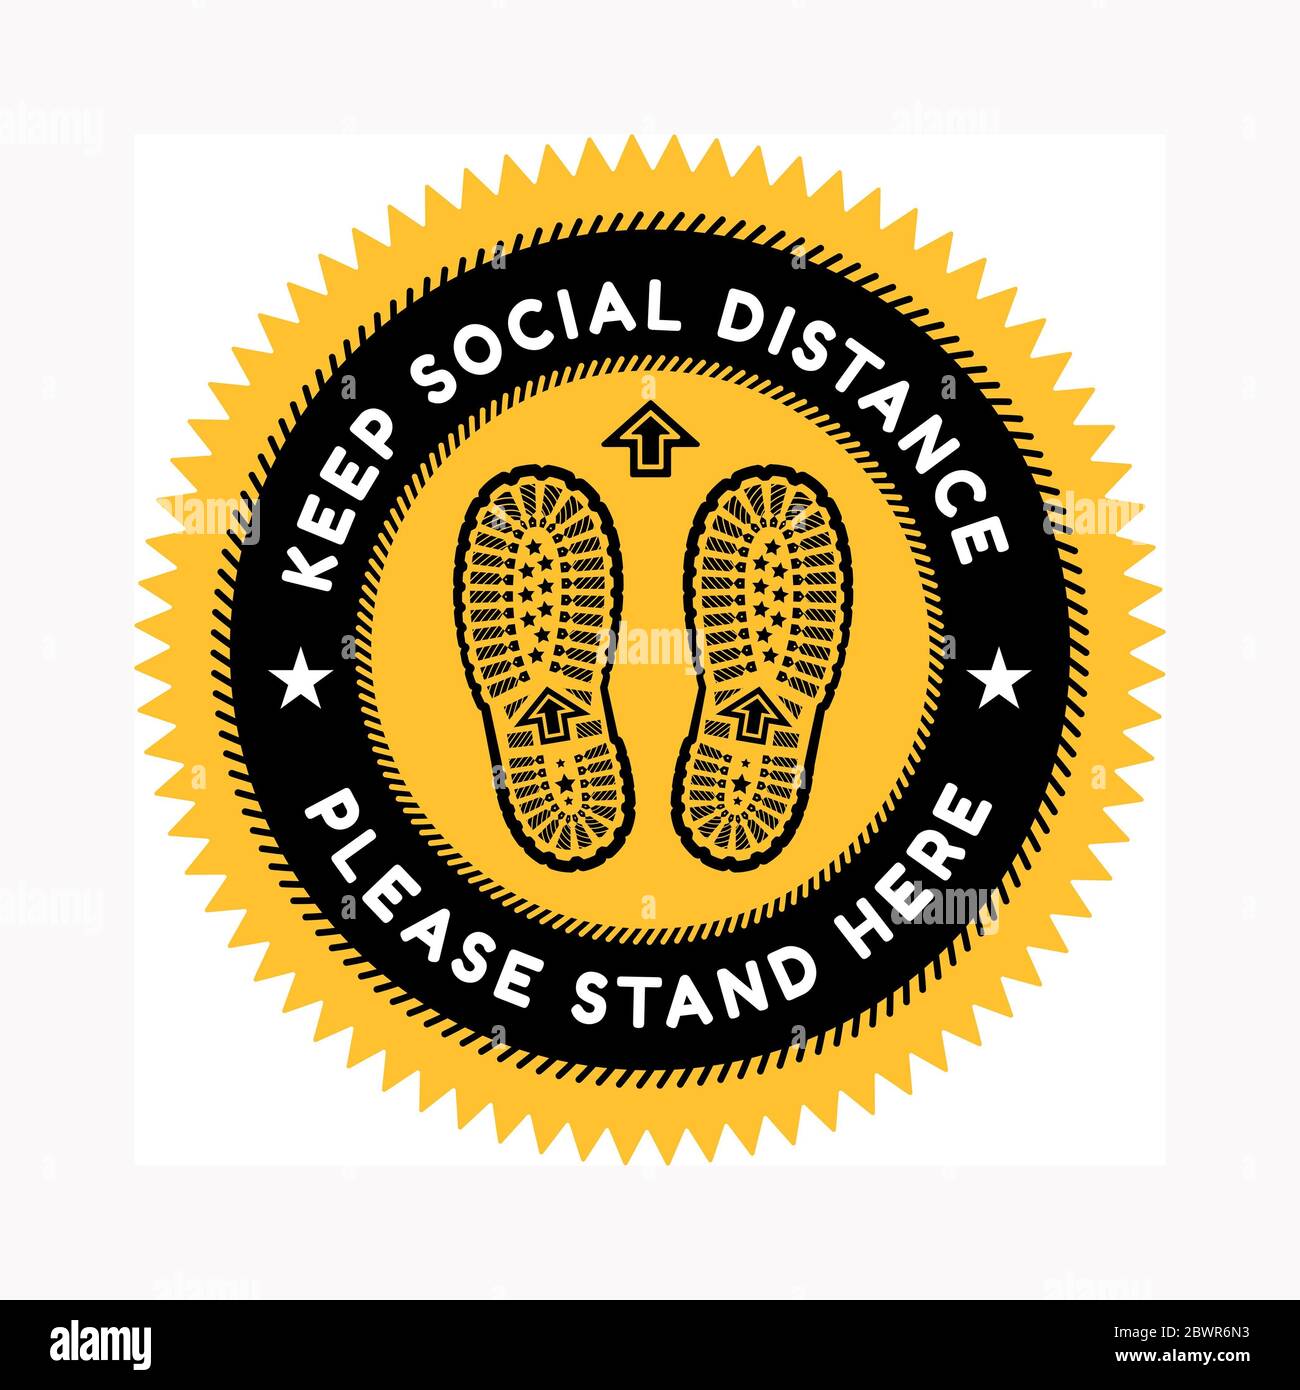 Zeichen für die Aufrechterhaltung der sozialen Distanz mit Aufdrucken eines Schuhs auf dem Hintergrund. Gegen die Ausbreitung des Coronavirus. Vektorgrafik. Stockfoto